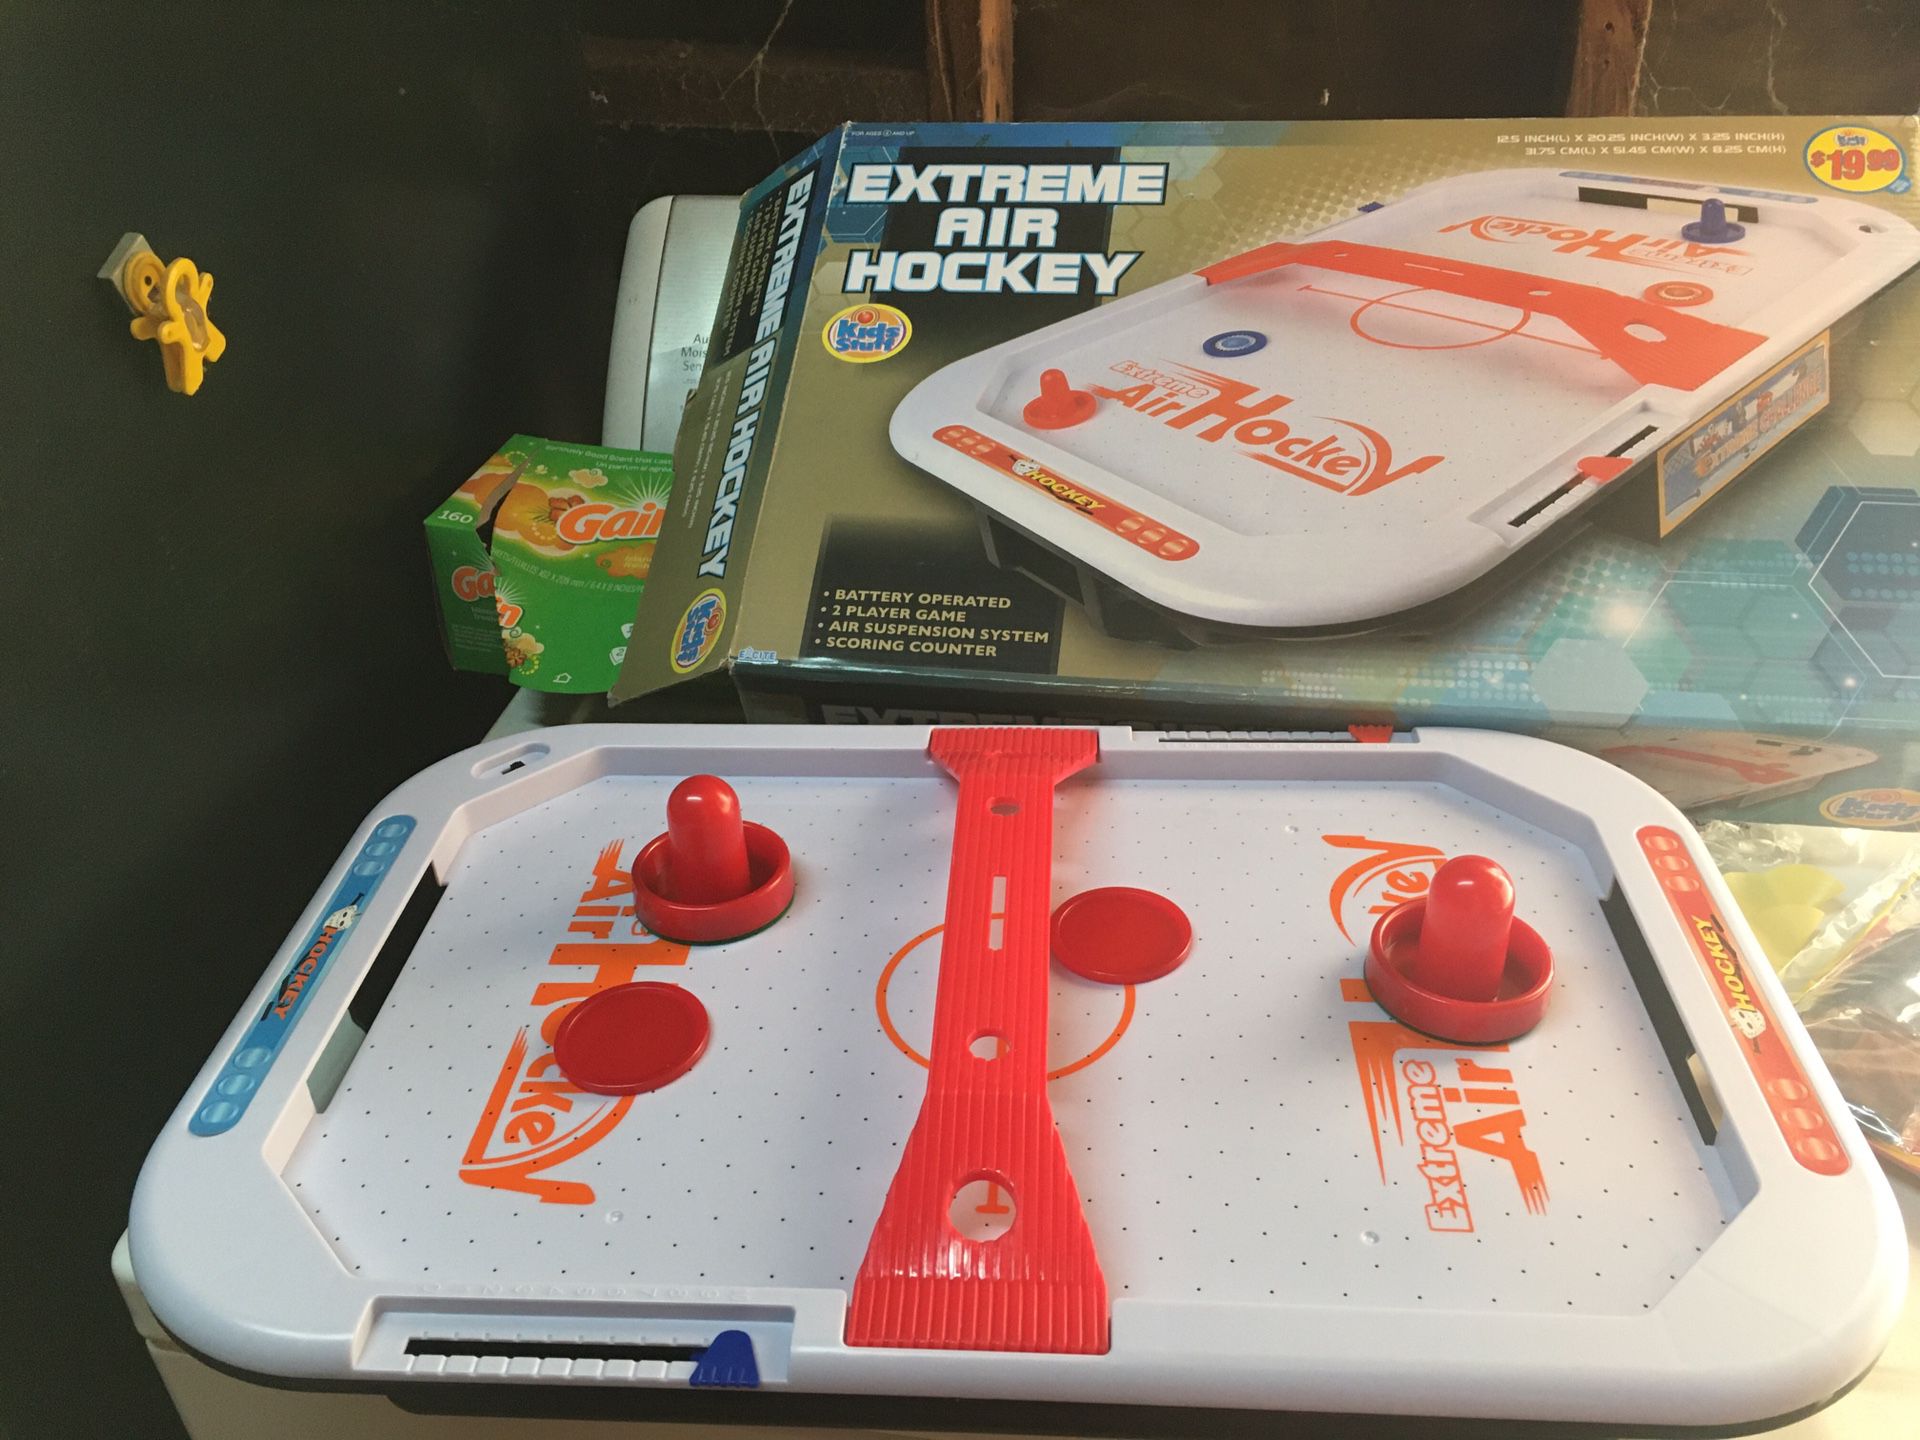 Tabletop air hockey table